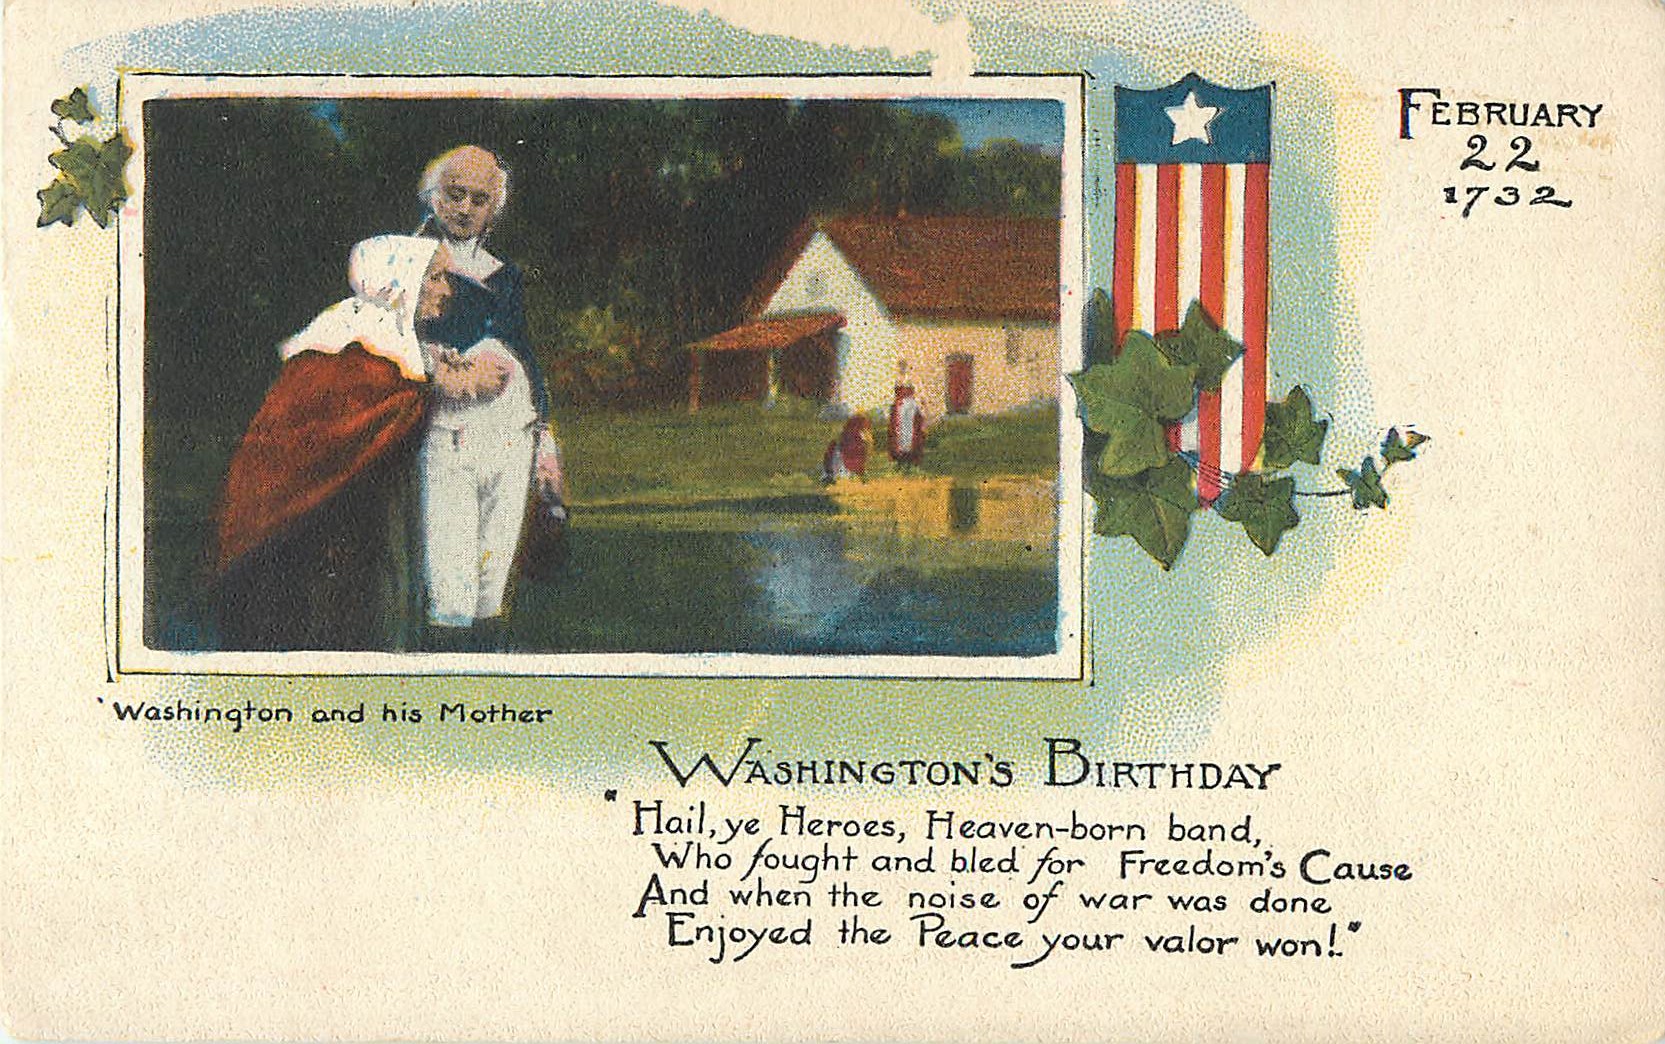 "Washington and His Mother"